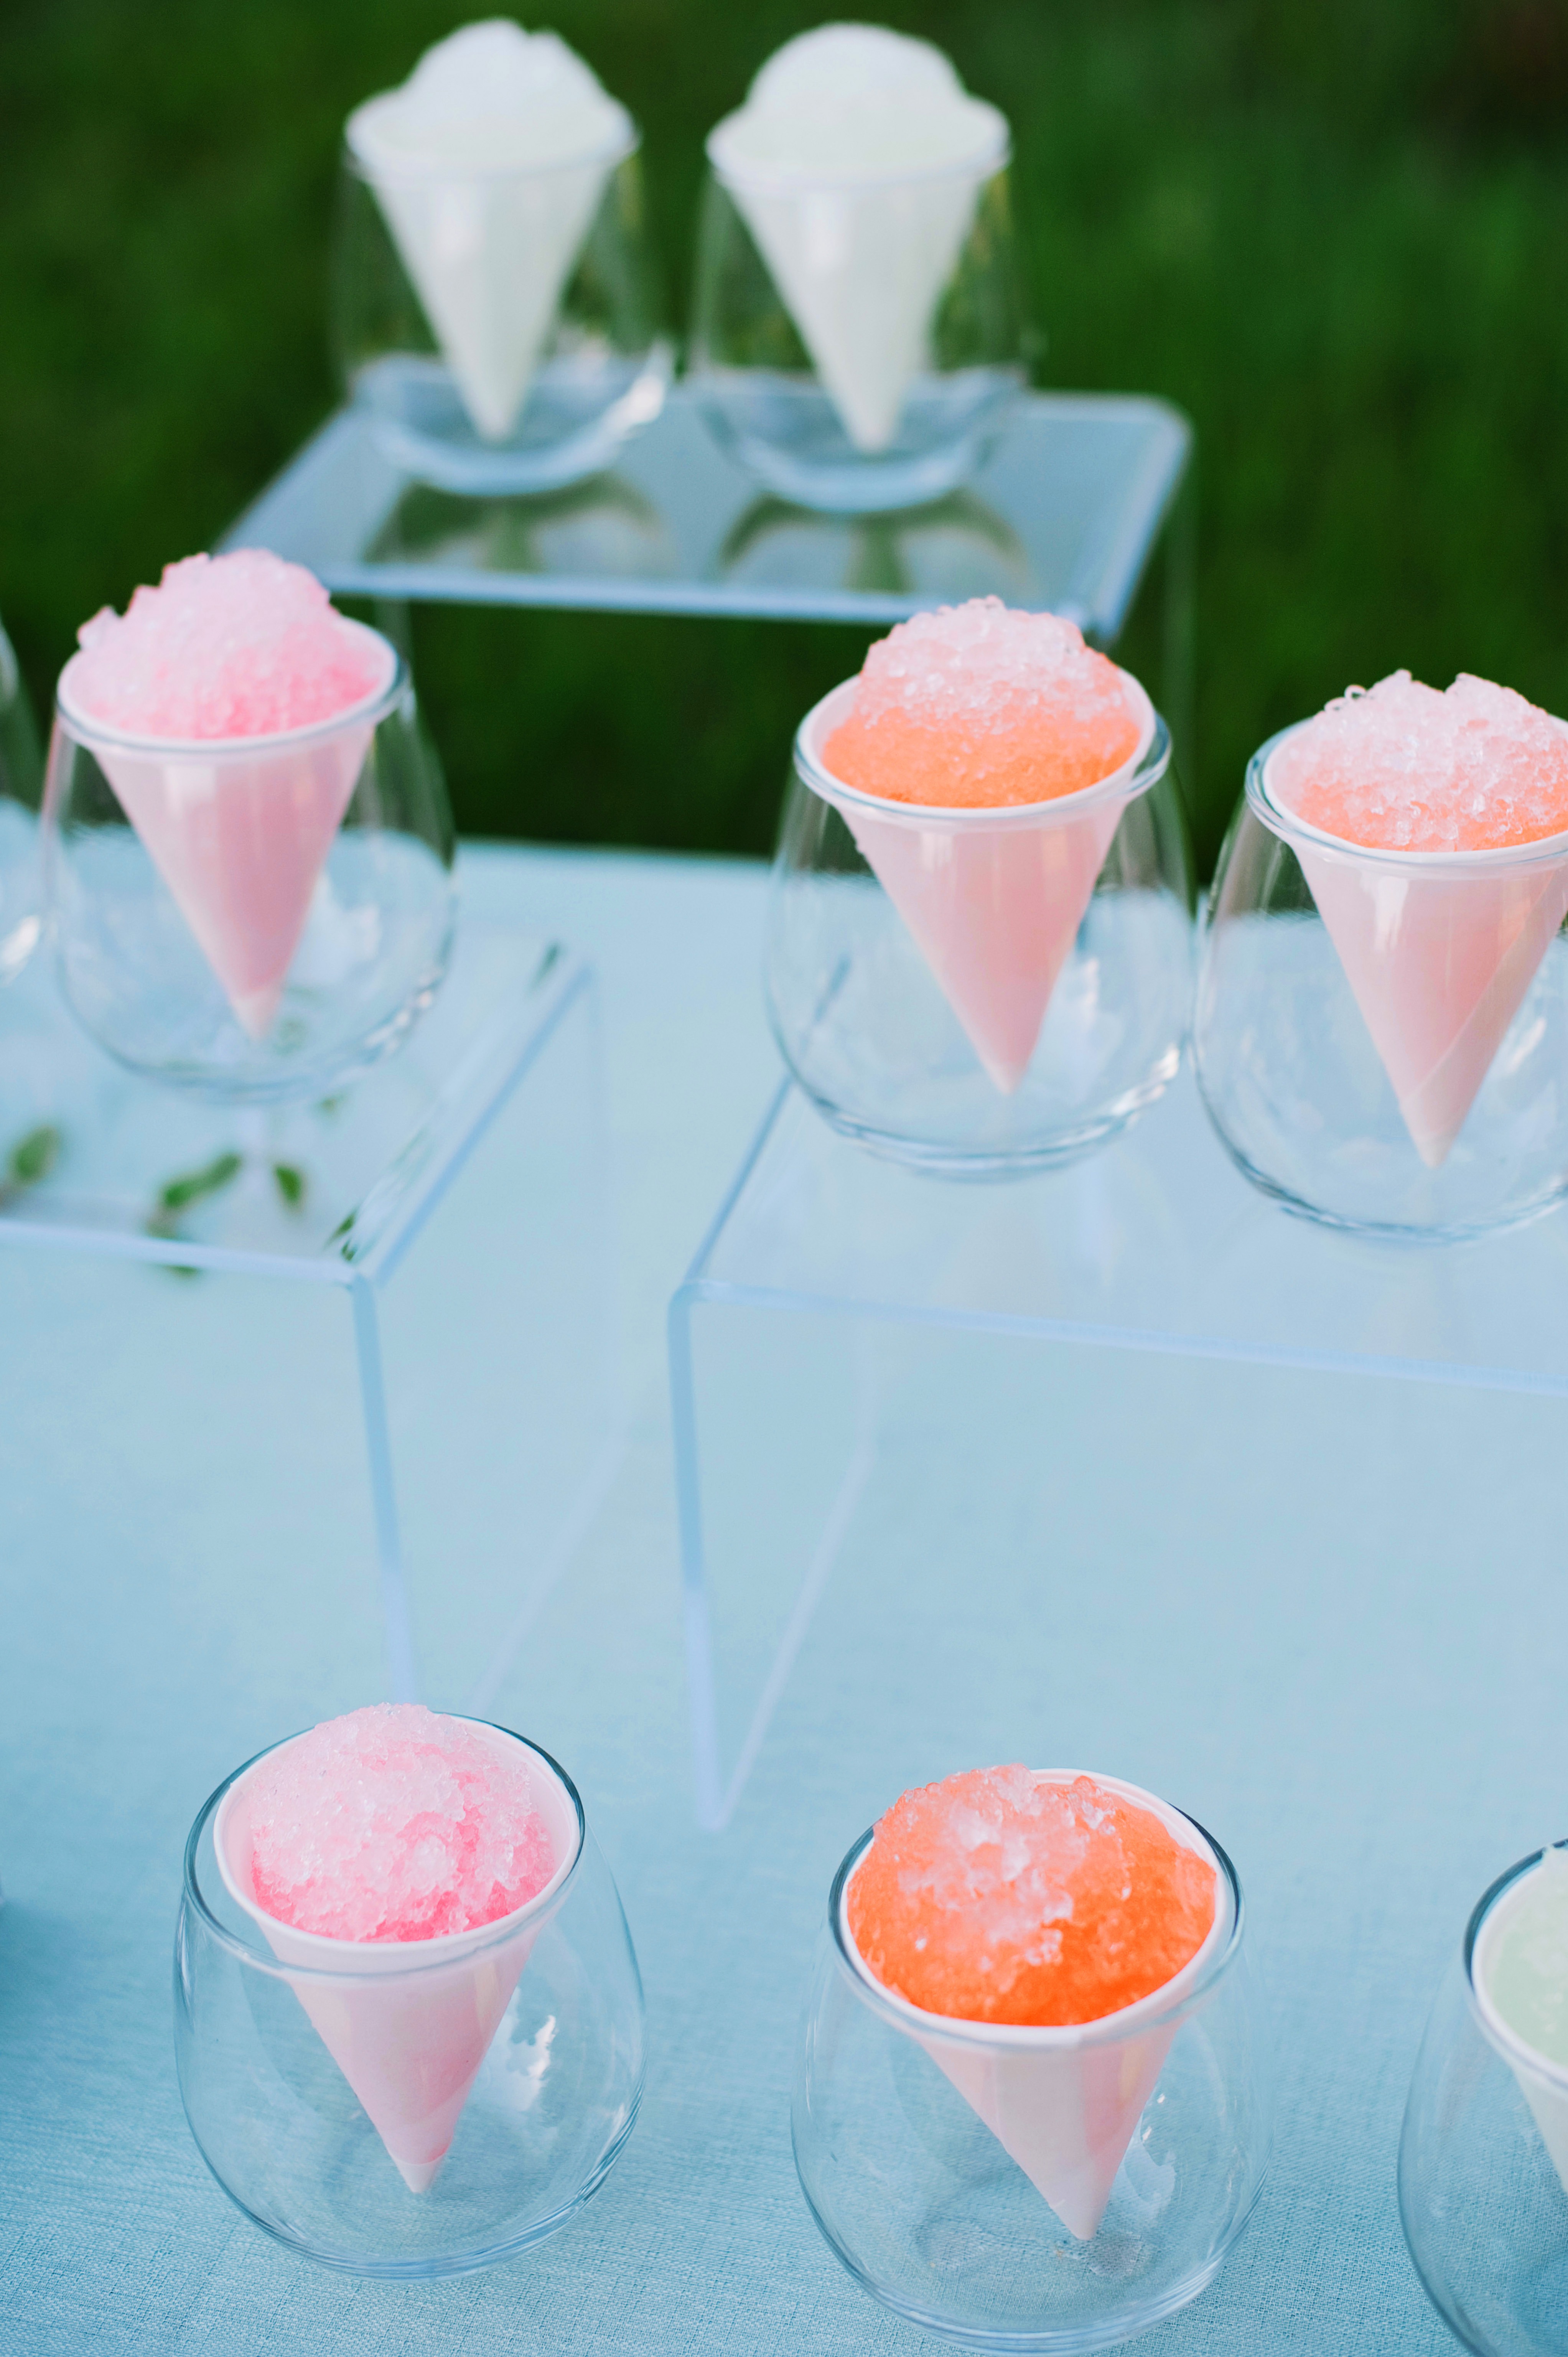 snow cone desserts wedding catering utah